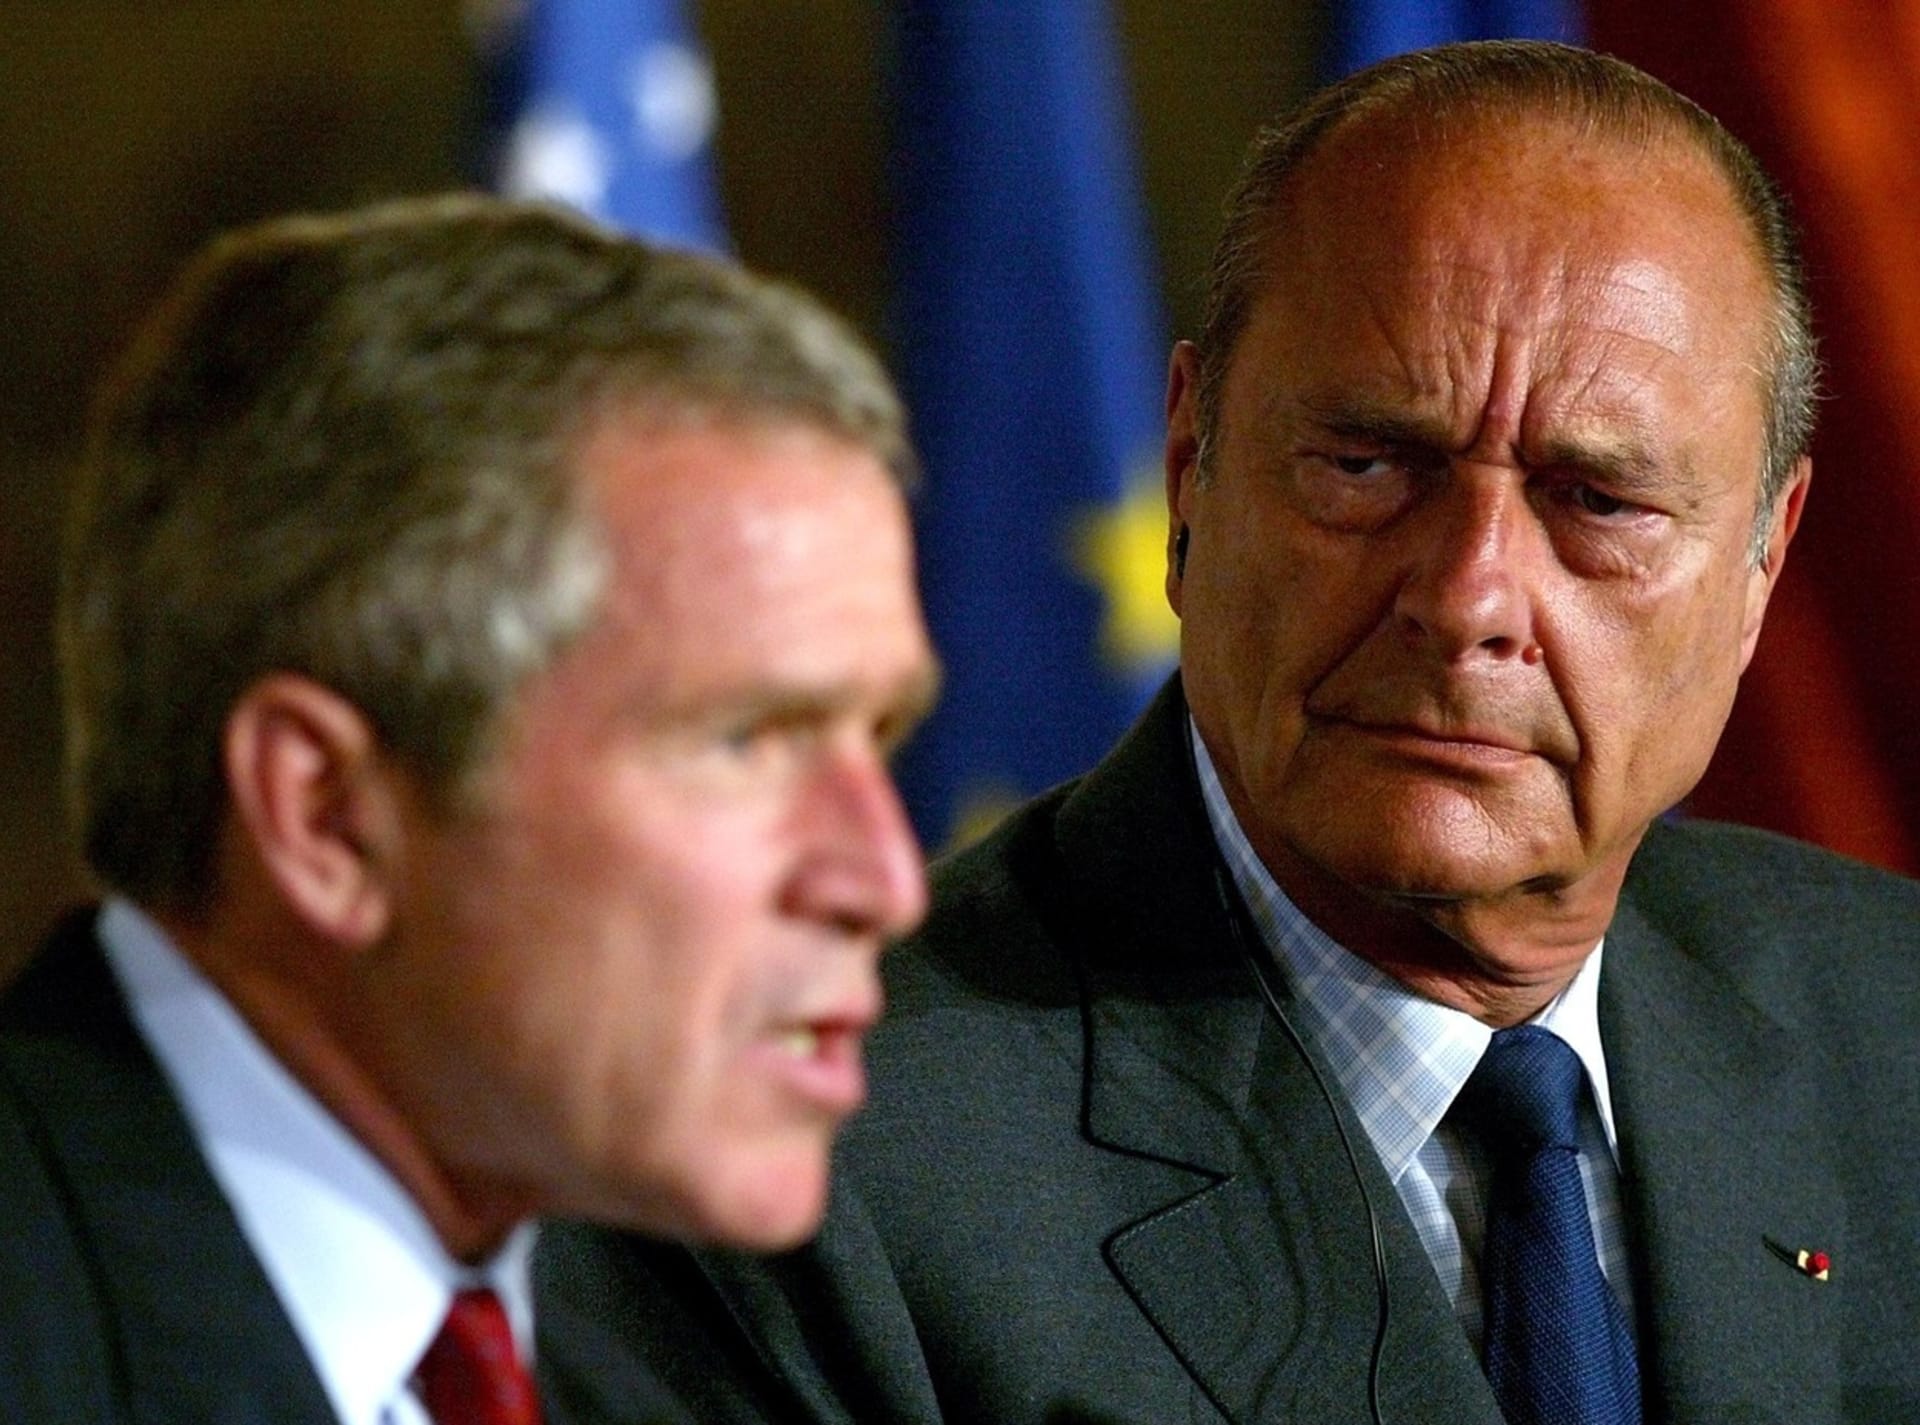 Prezidenti Jacques Chirac a George W. Bush se v otázce války s Irákem neshodli